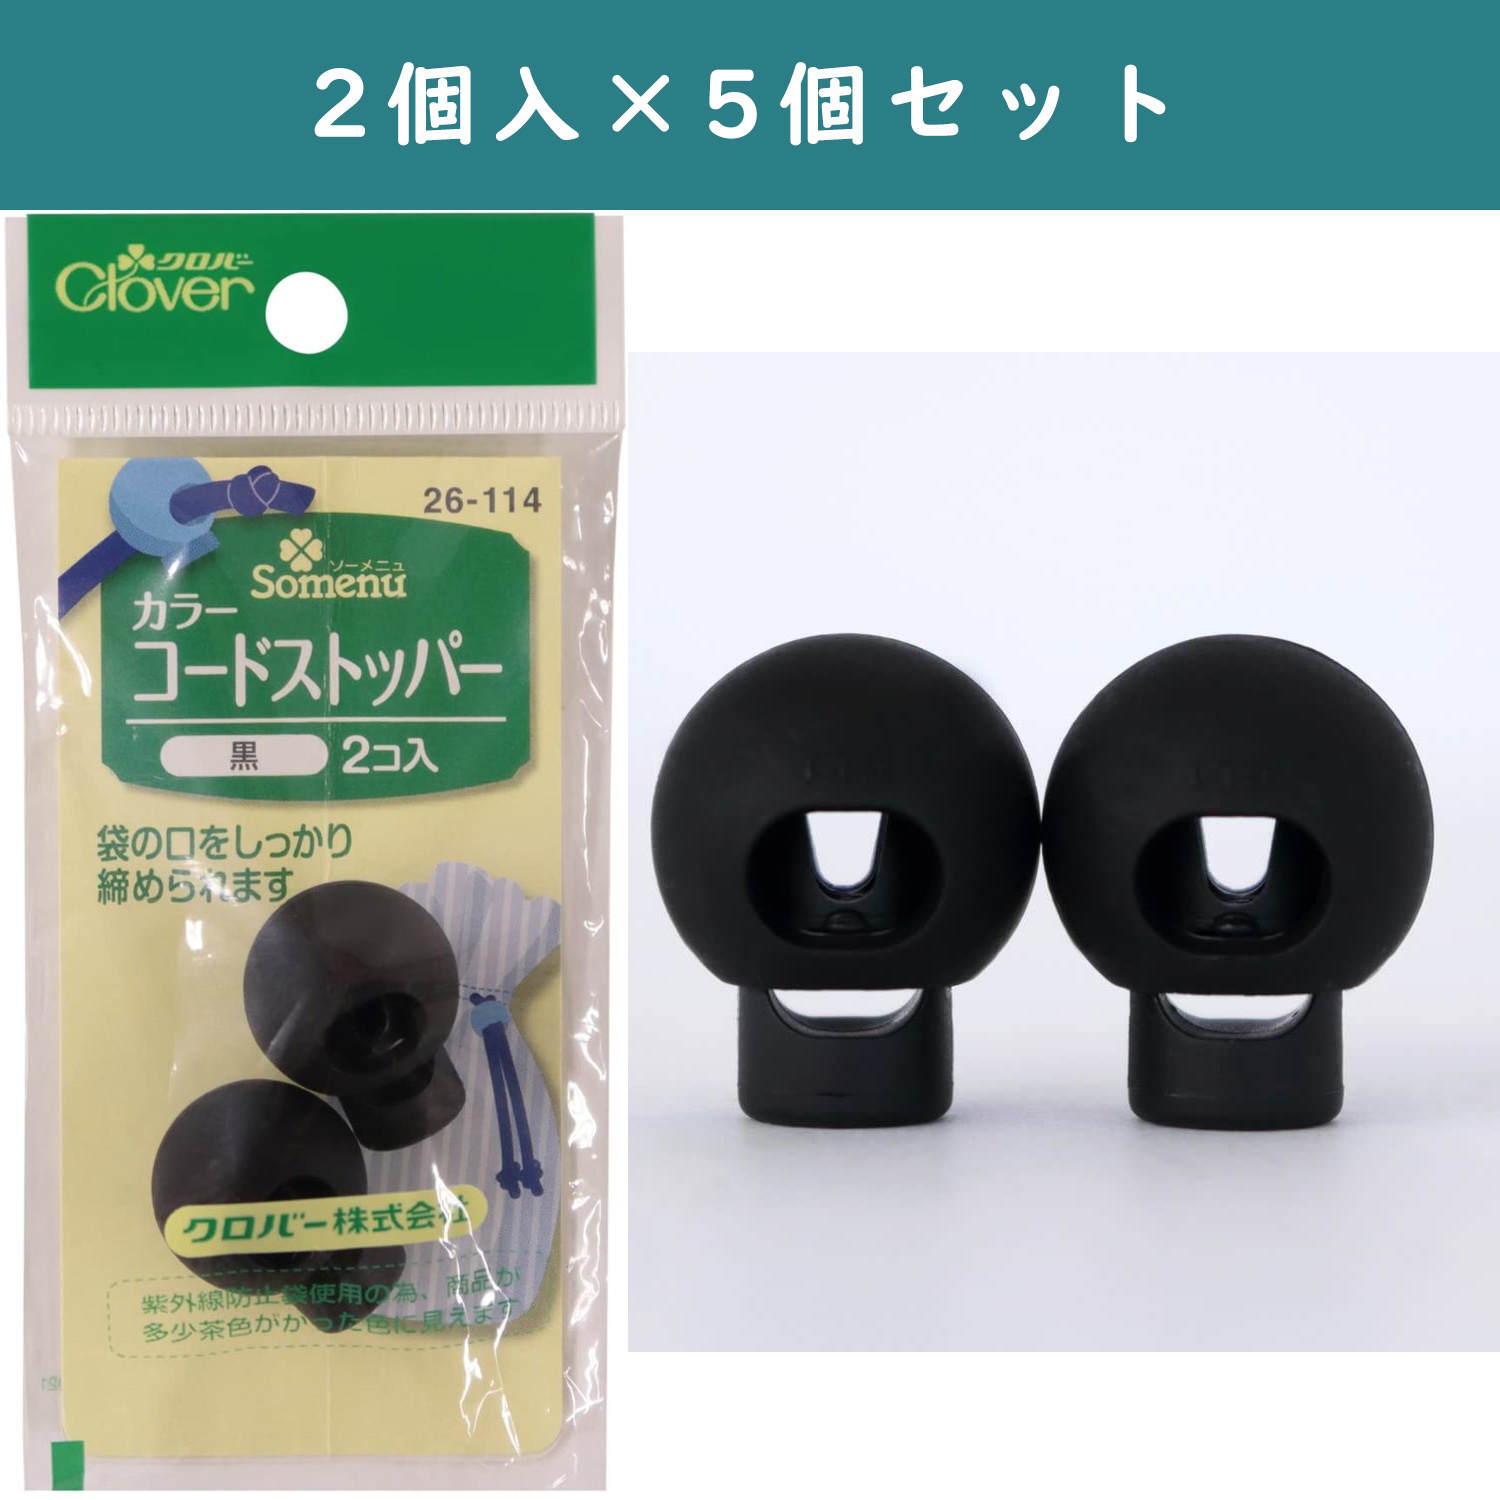 ■【5個】CL26-114-5set カラーコードストッパー 2個入 黒×5個 (セット)